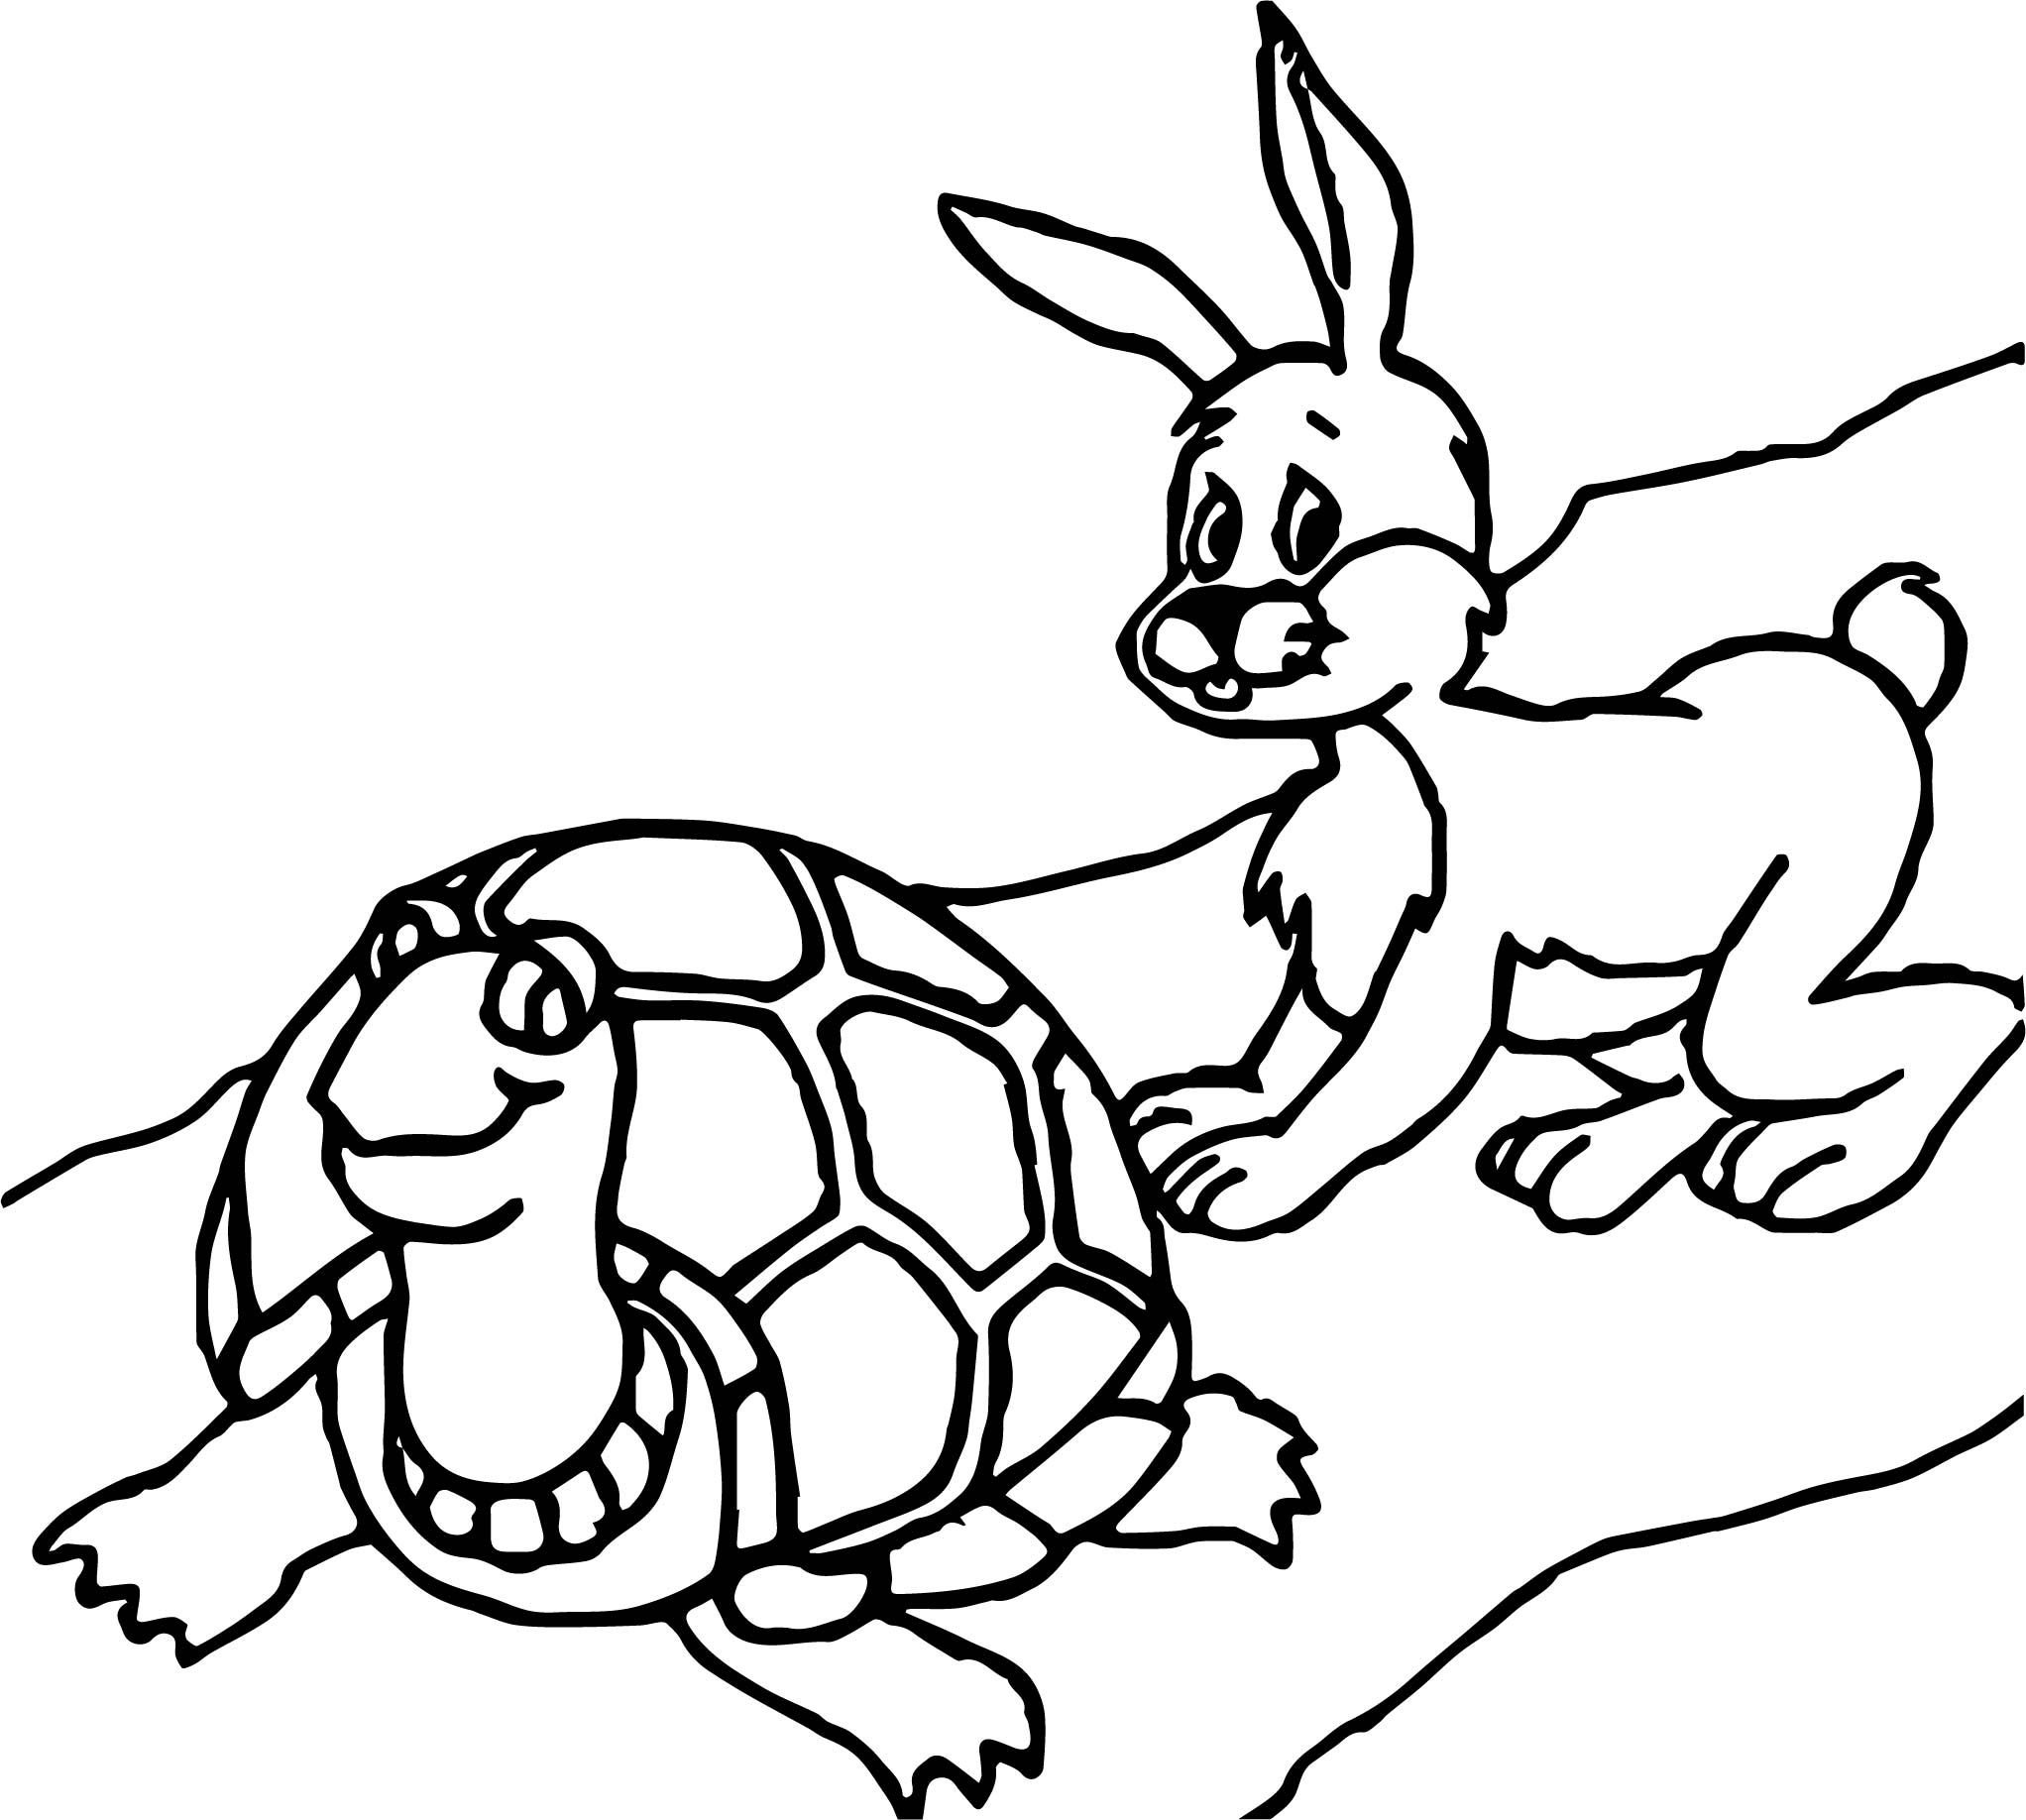 Заяц и черепаха читать. Черепашка раскраска для детей. Черепаха раскраска для детей. Заяц и черепаха раскраска. Заяц и черепаха нарисовать.